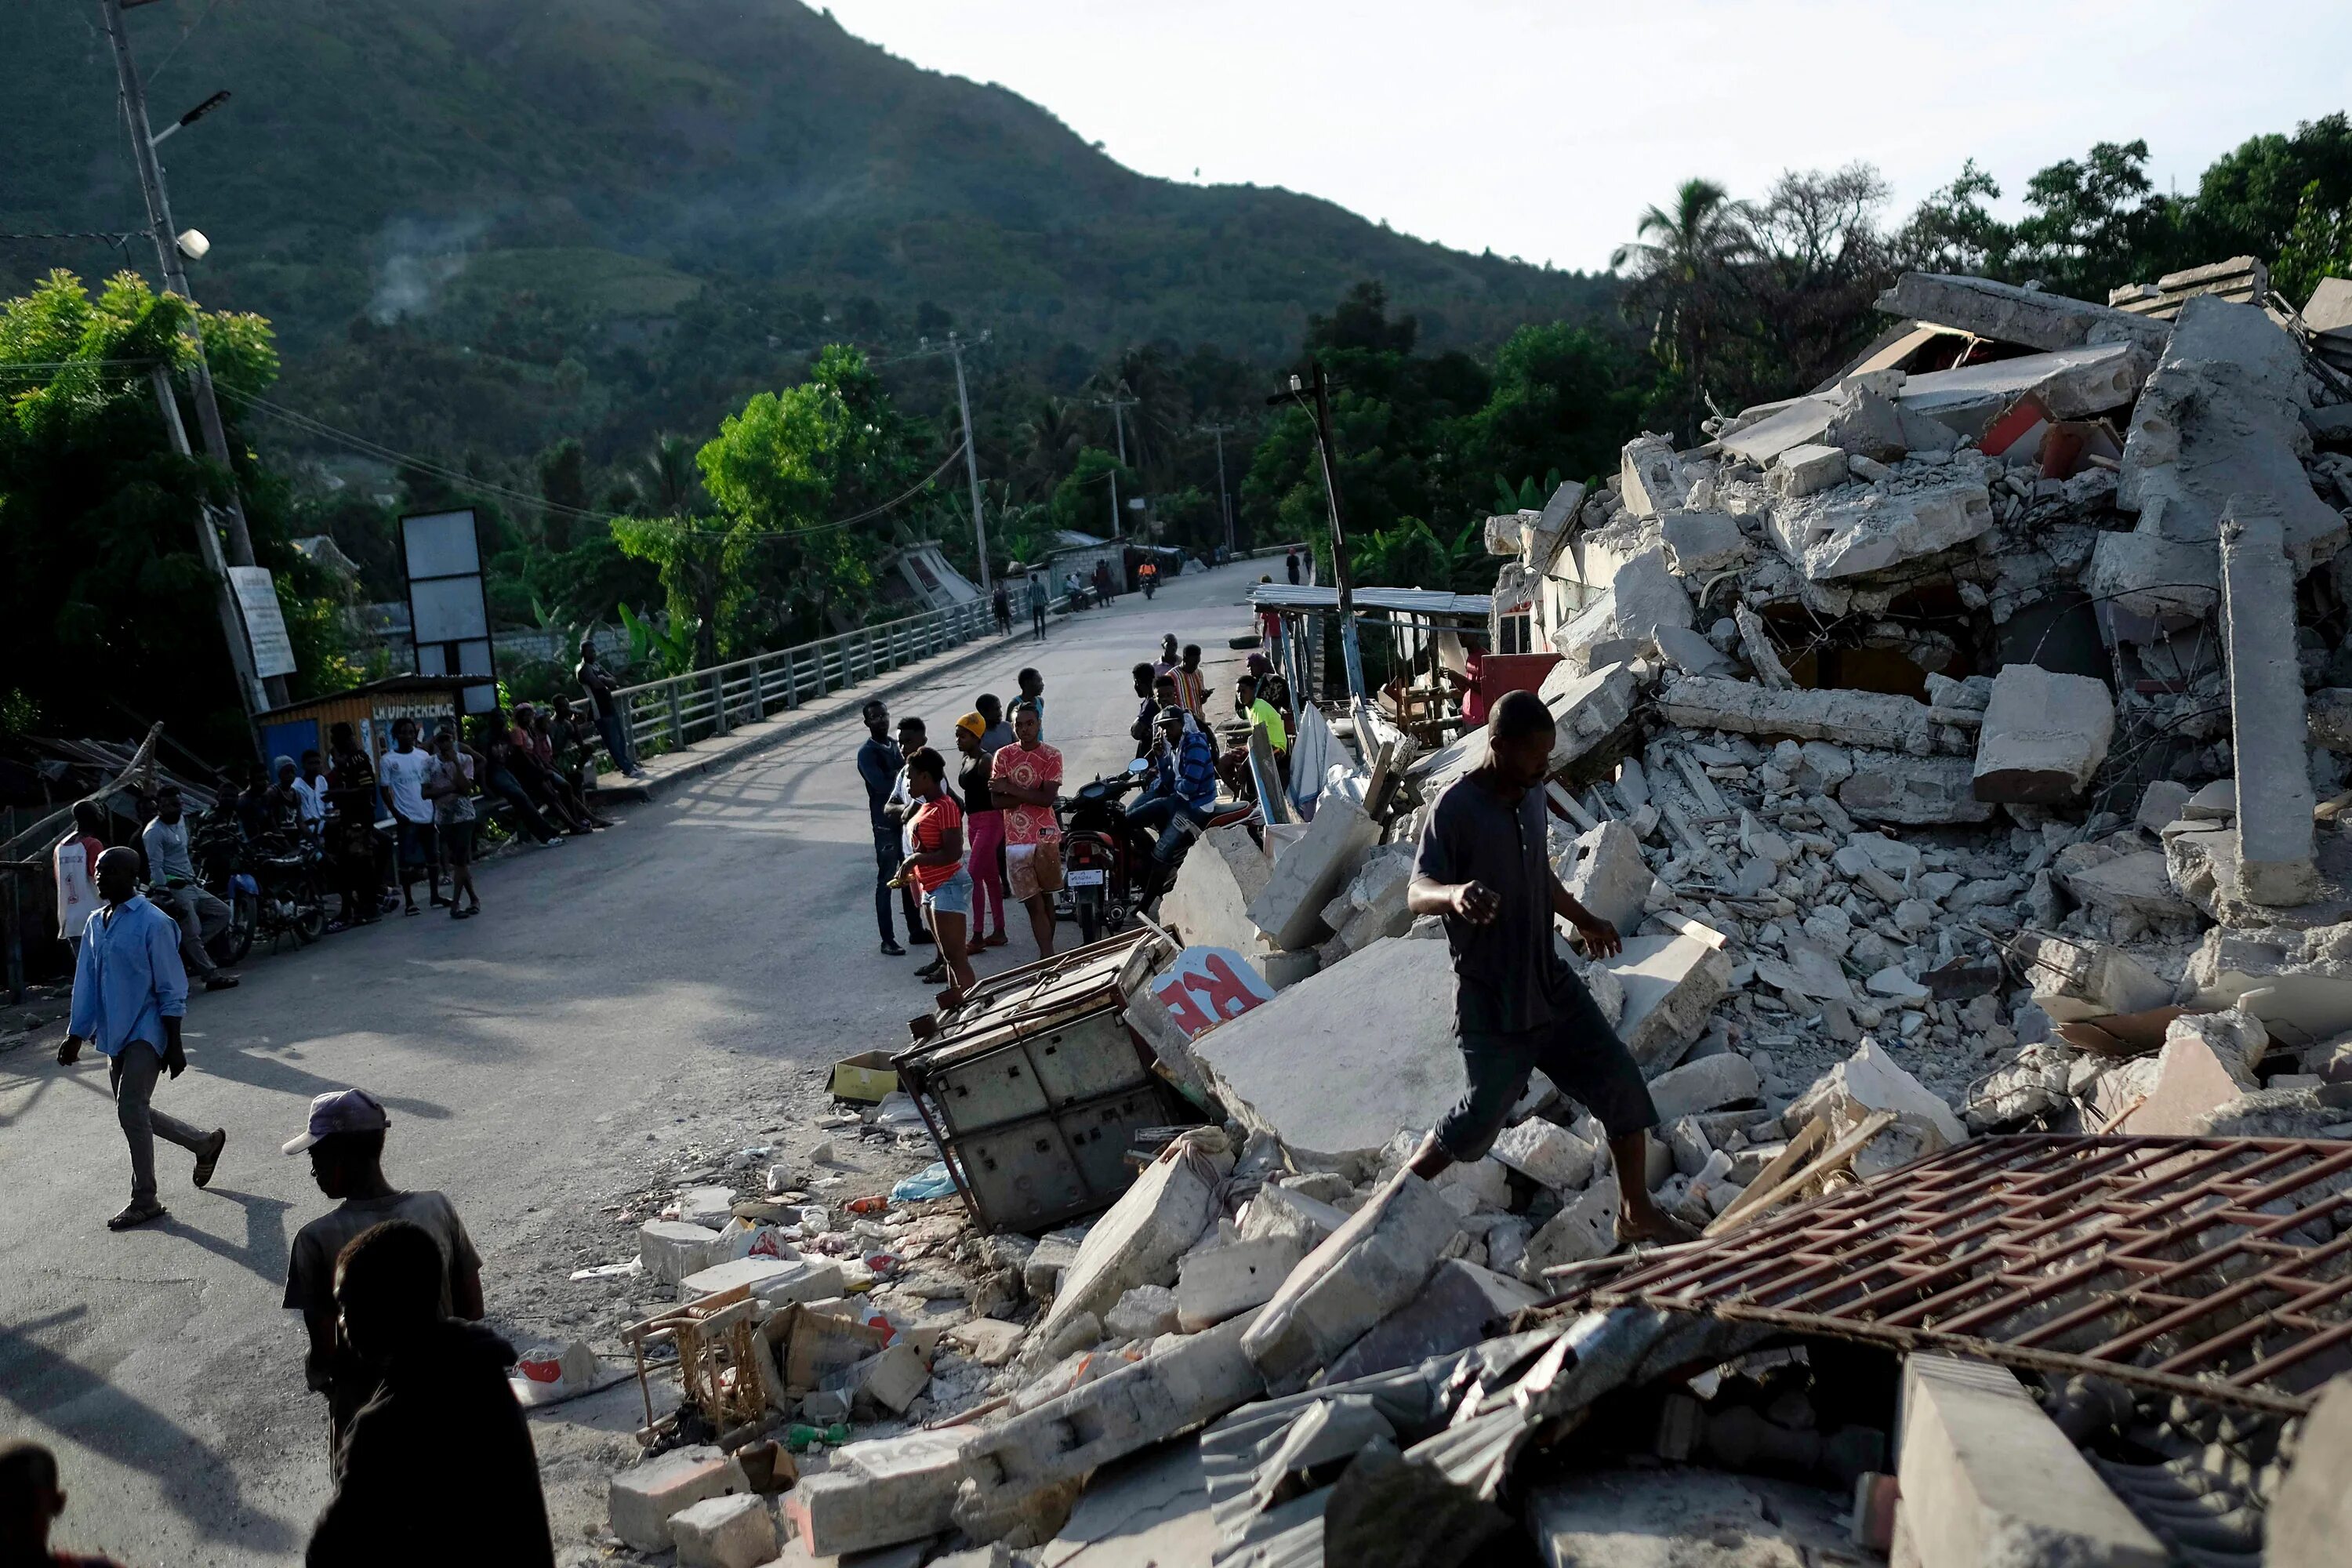 Землетрясение на Гаити 2021. Землетрясение на Гаити в 2010 порт-о-Пренс. Землетрясение на Гаити 2010 президентский дворец. Землетрясение видел